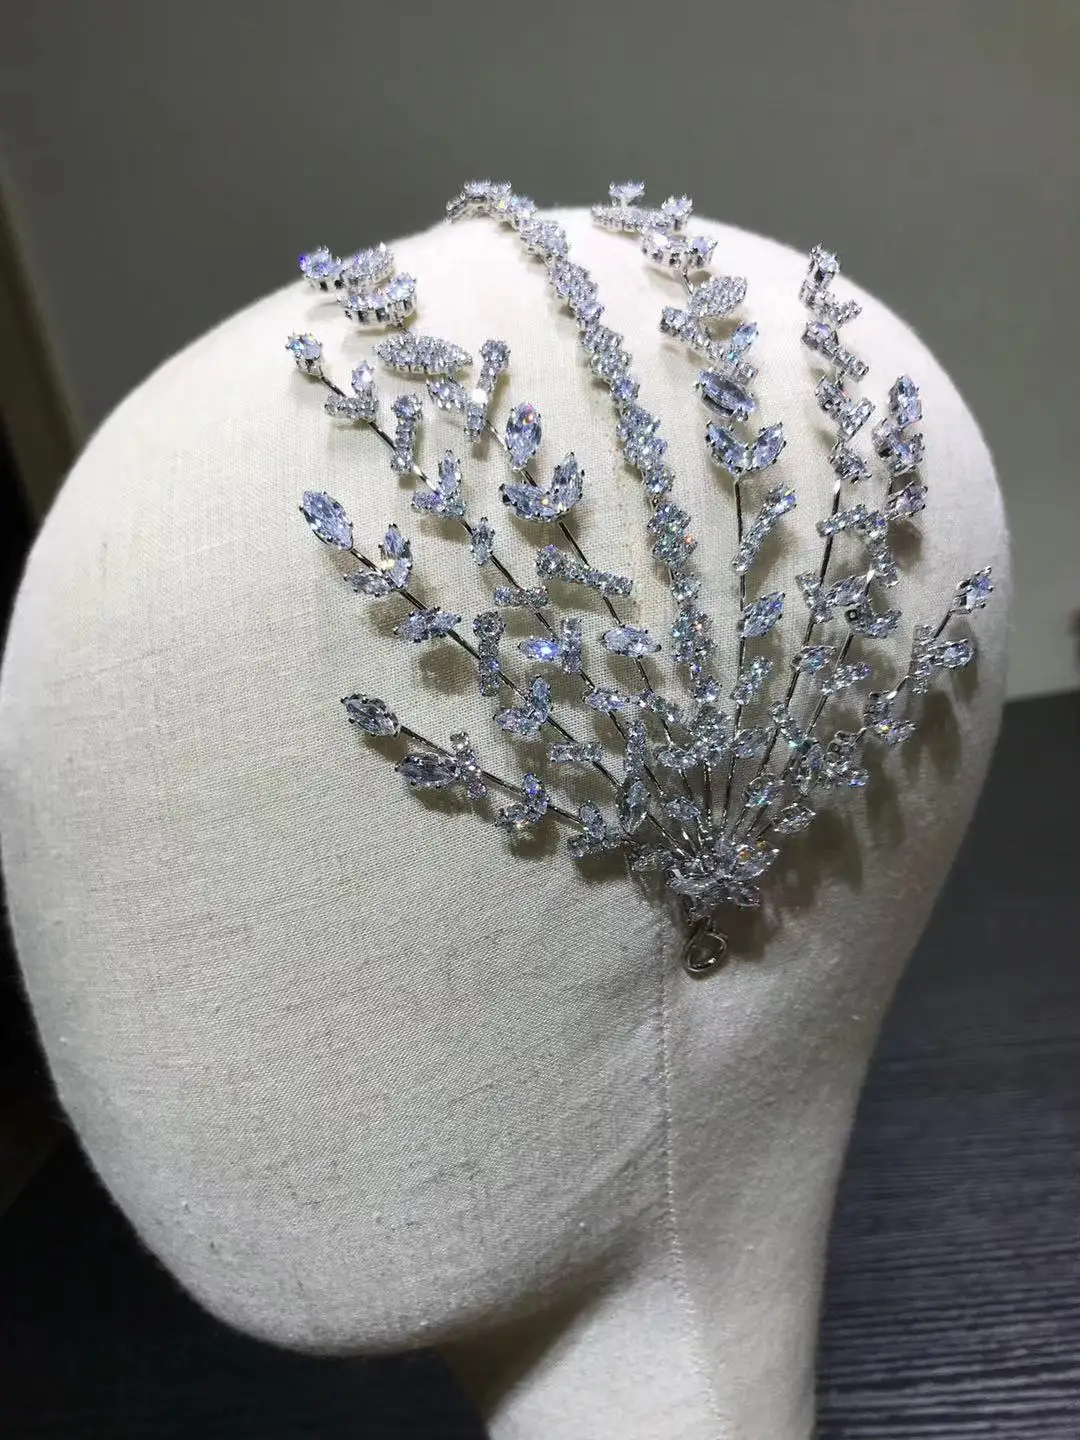 ASNORA Unique Crystal Headband Wedding Hair Accessories Bride Wedding Crown, Princess Birthday Tiaras, Parade Prom Accessories